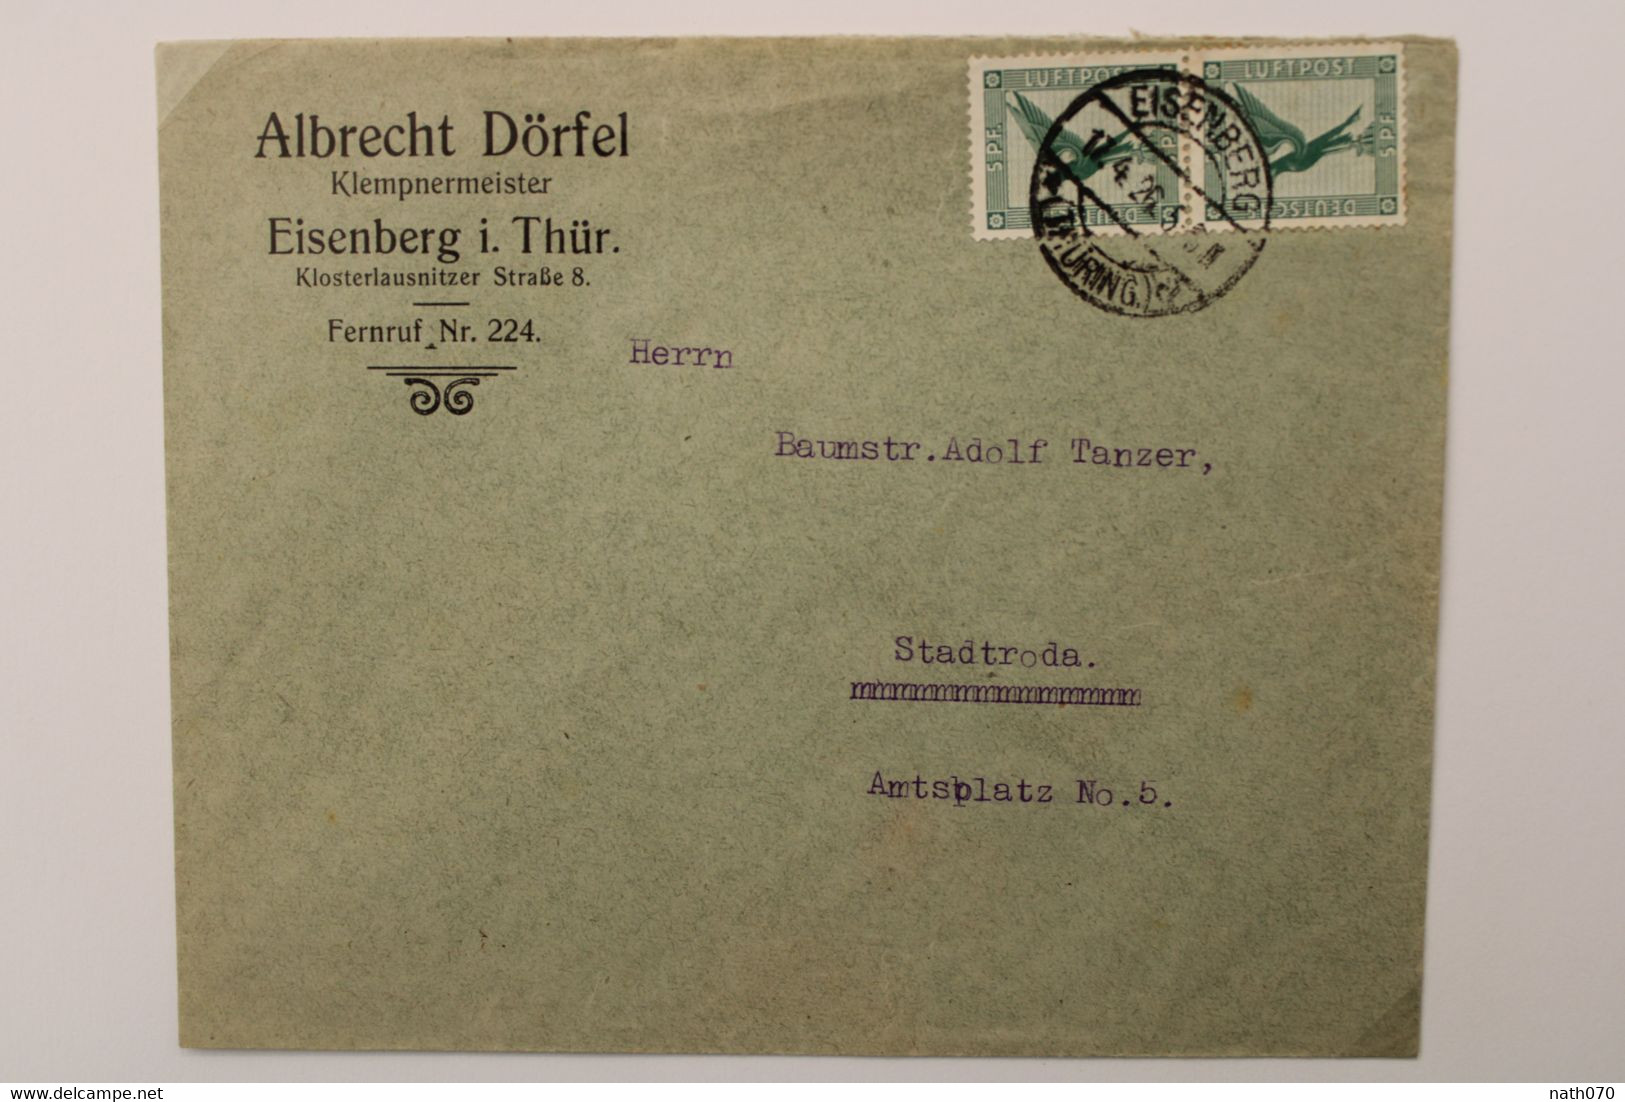 1926 Eisenberg Stadtroda Flugpost Paar Luftpost Air Mail Poste Aerienne Cover Deutsches Reich Germany Allemagne Mi 378 - Cartas & Documentos